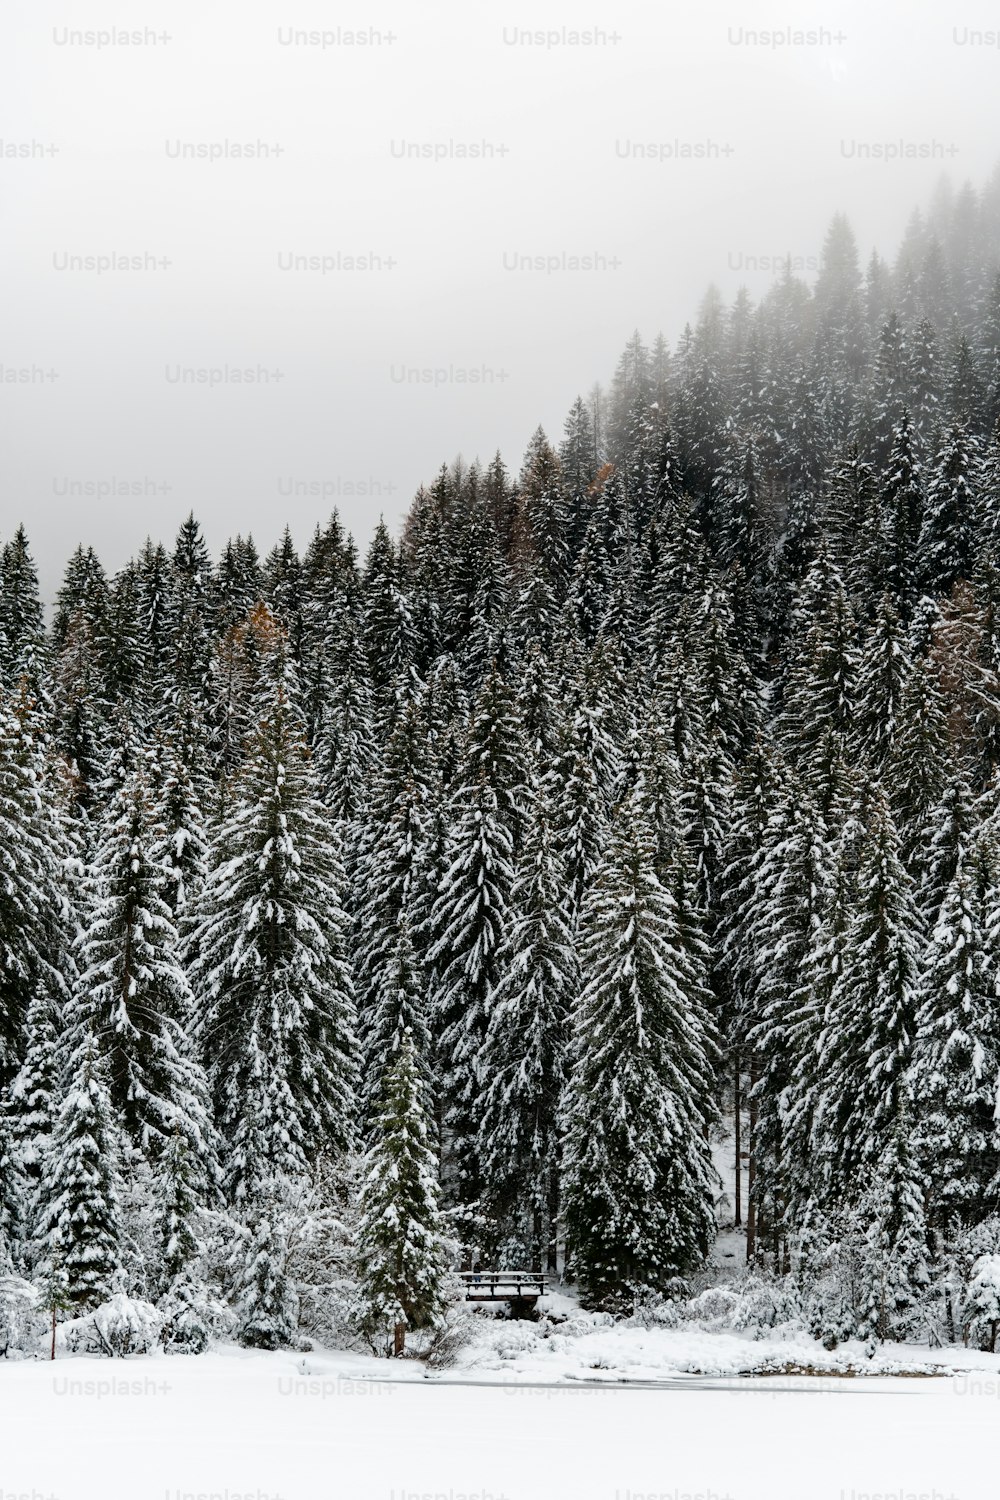 たくさん��の木々が咲き誇る雪に覆われた森